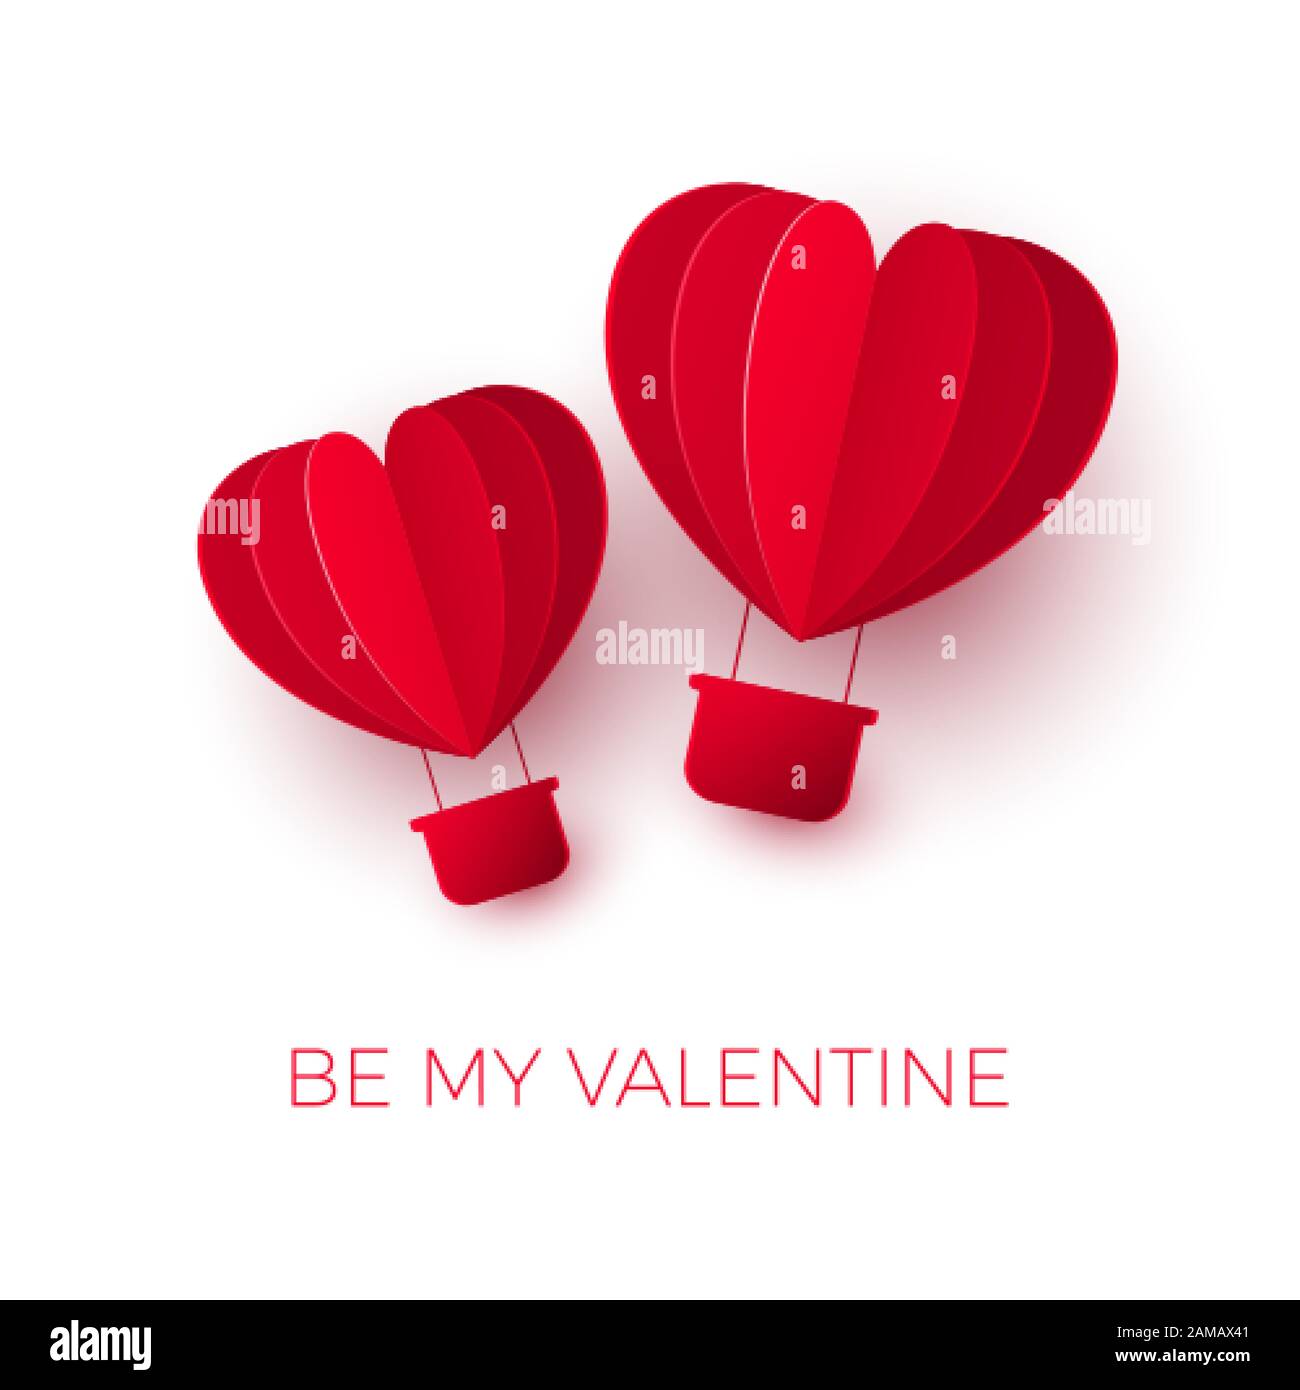 Valentinstag mit Papier geschnitten roter, herzförmiger Luftballon. Paarballons fliegen. Seien Sie meine Valentins-Illustration. Vektor Stock Vektor